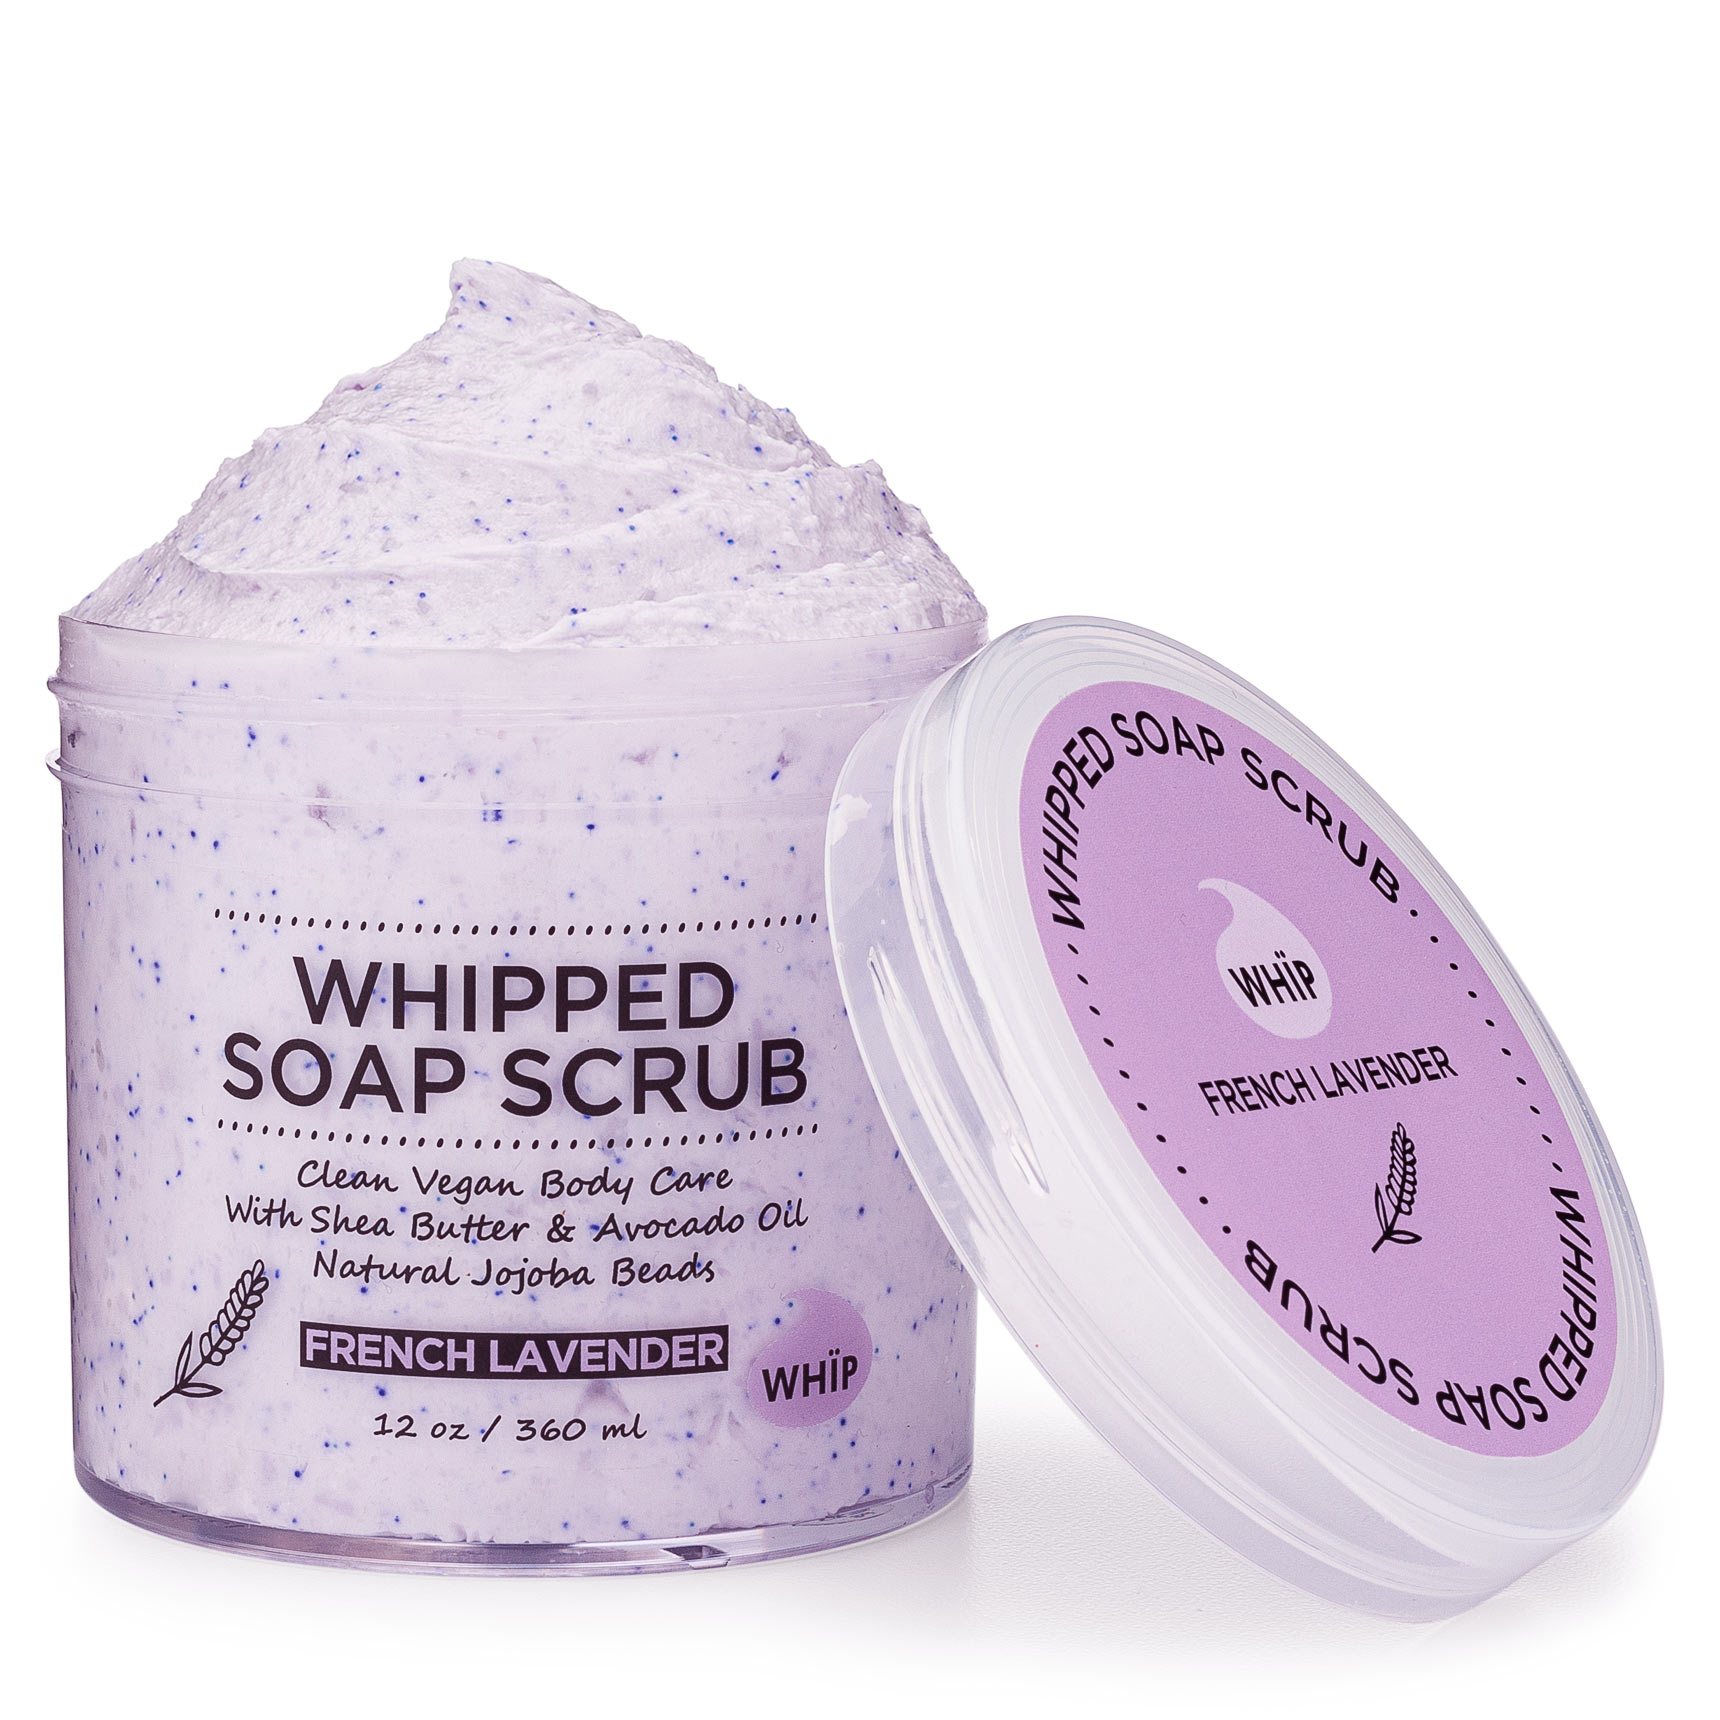 Whipped-Soap-Scrub---French-Lavender-WHÏP